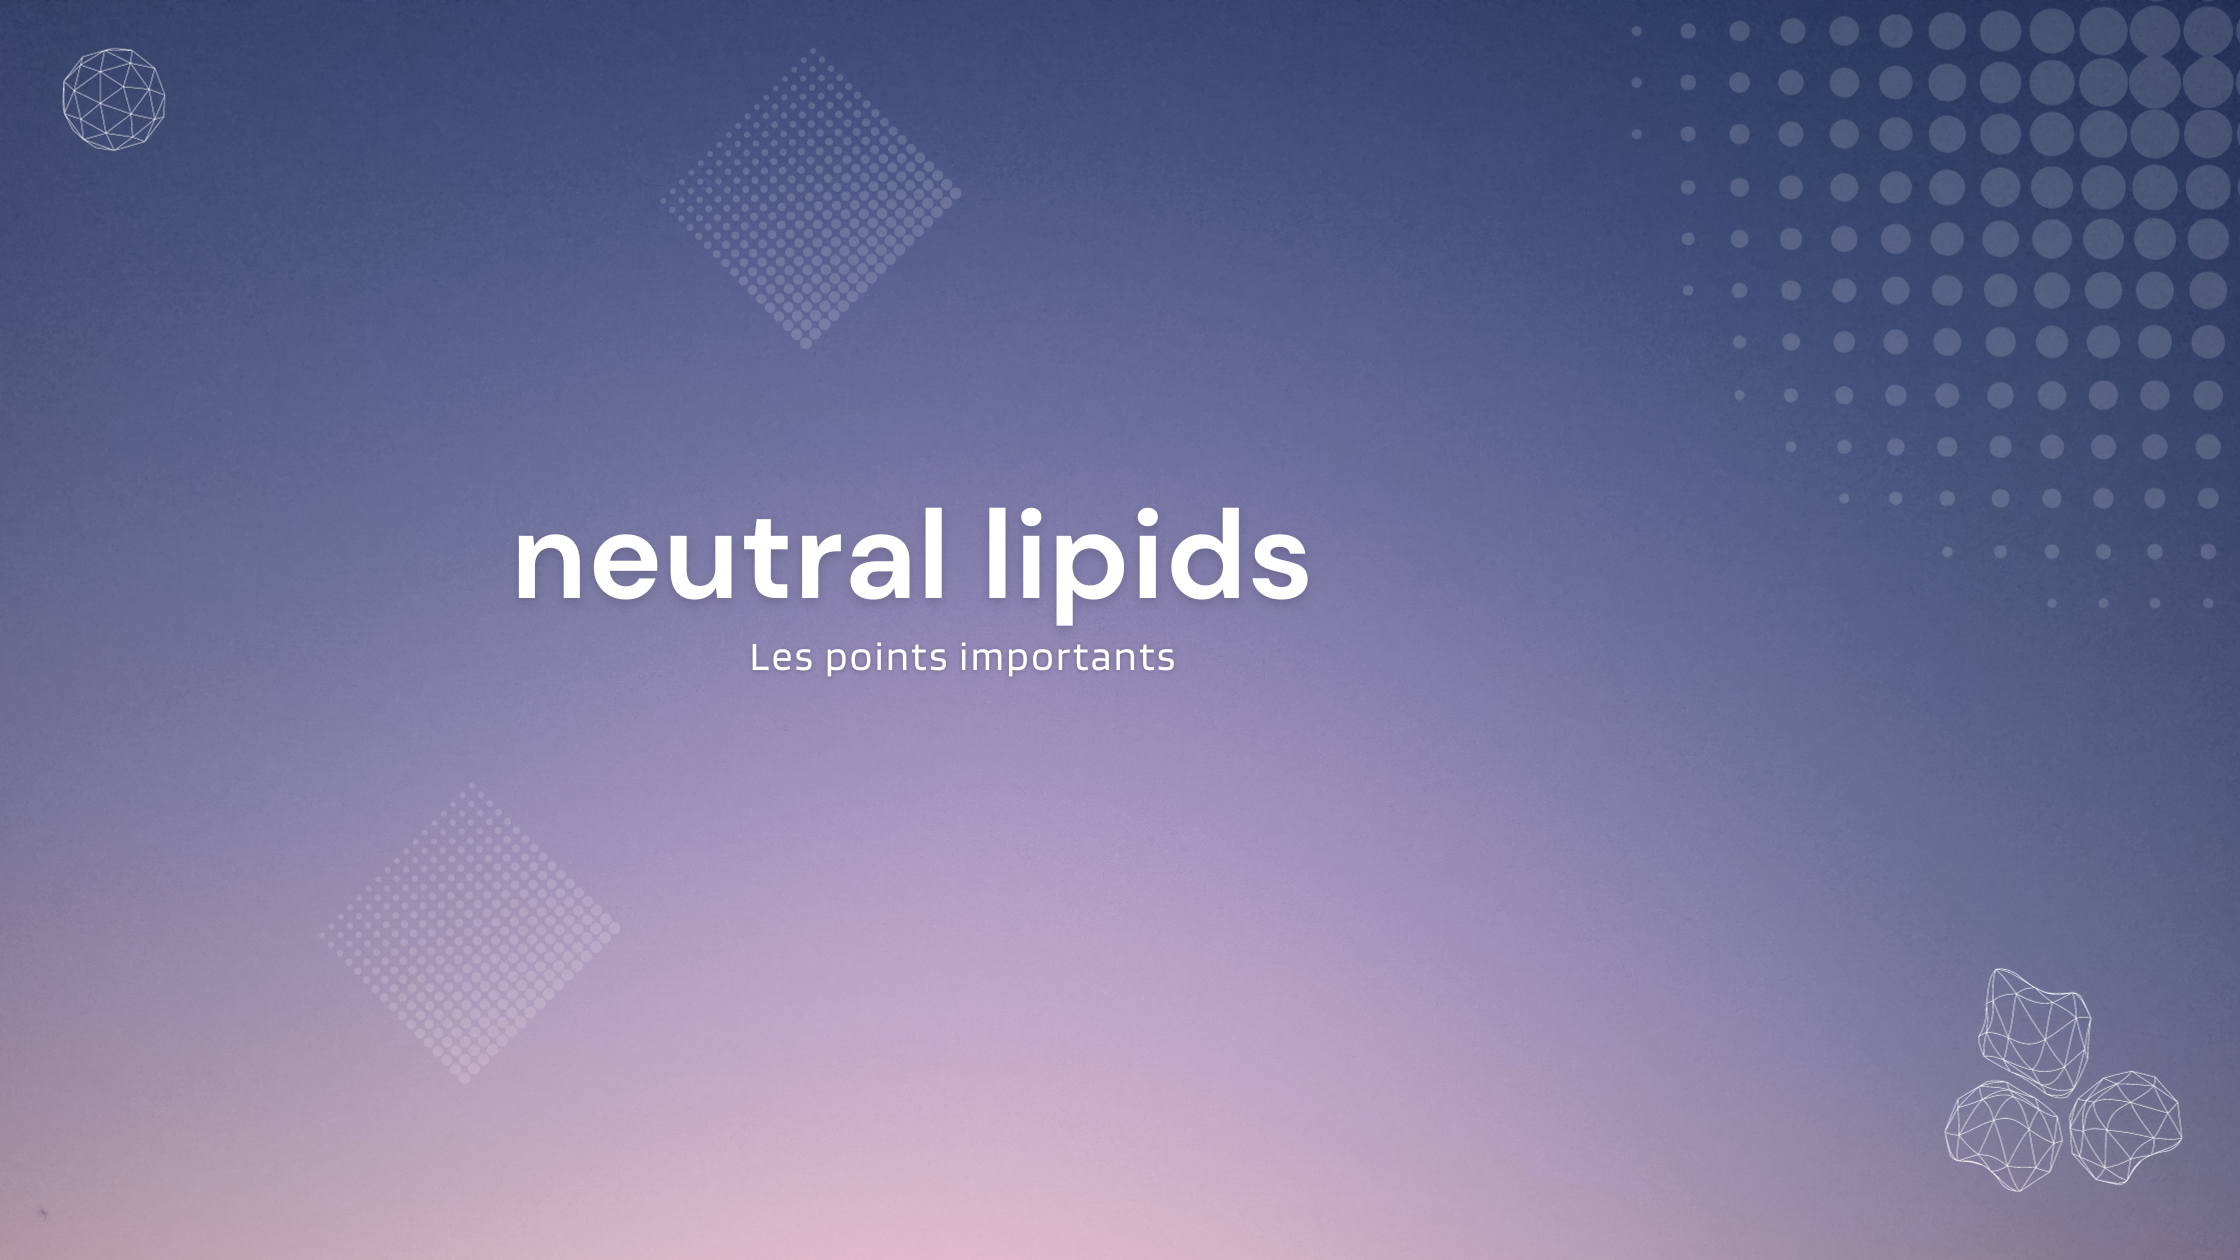 neutral lipids | Les points importants